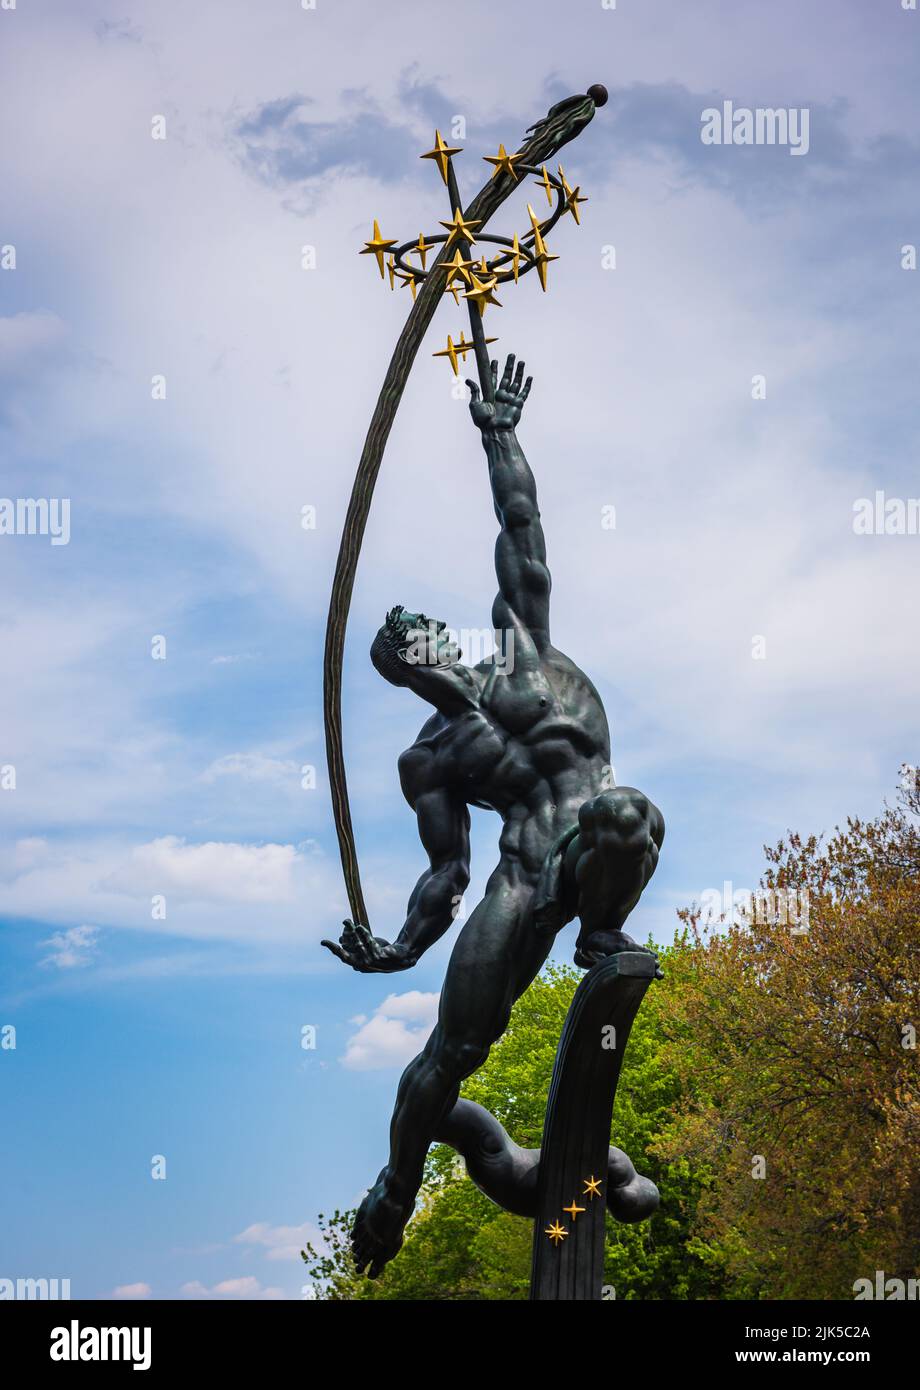 New York, NY/USA - 05-09-2016: Creato per la fiera mondiale del 1964, Rocket Thrower è una scultura in bronzo del 1963 dello scultore americano Donald De Lue. Foto Stock